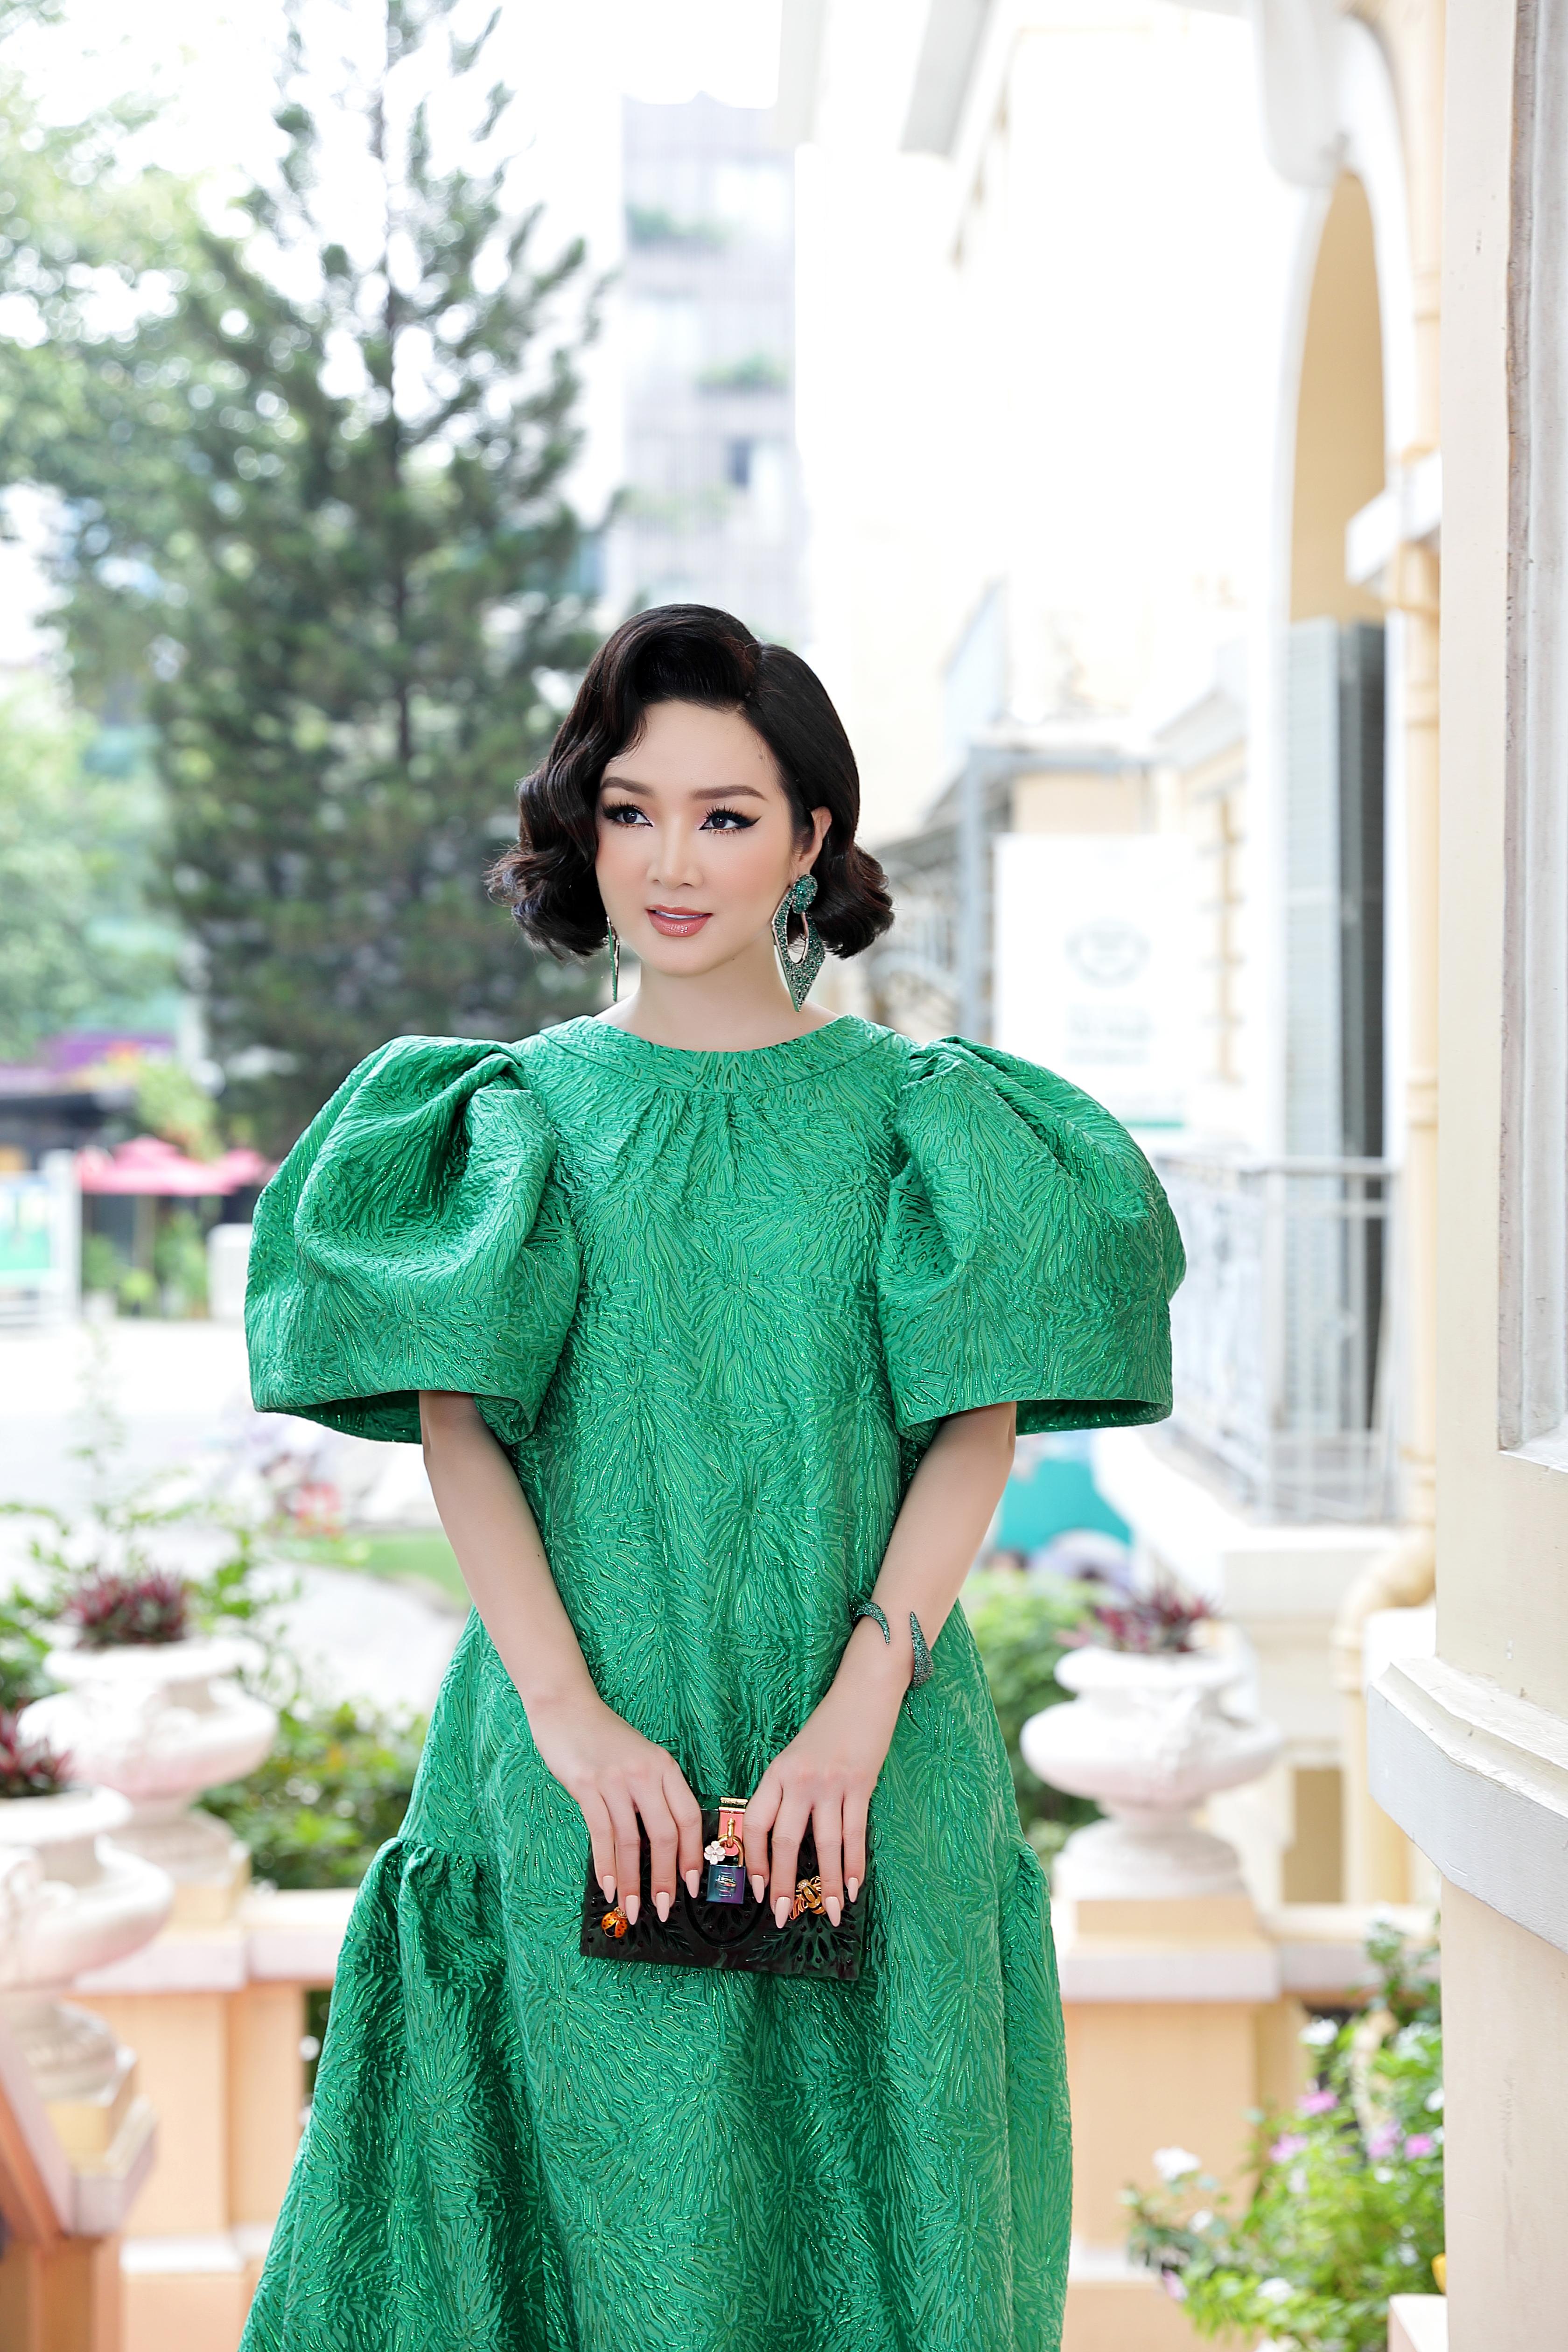 10 Sao Nữ Mặc Đẹp Nhất Trên Thảm Đỏ Fashion Show Bình Minh